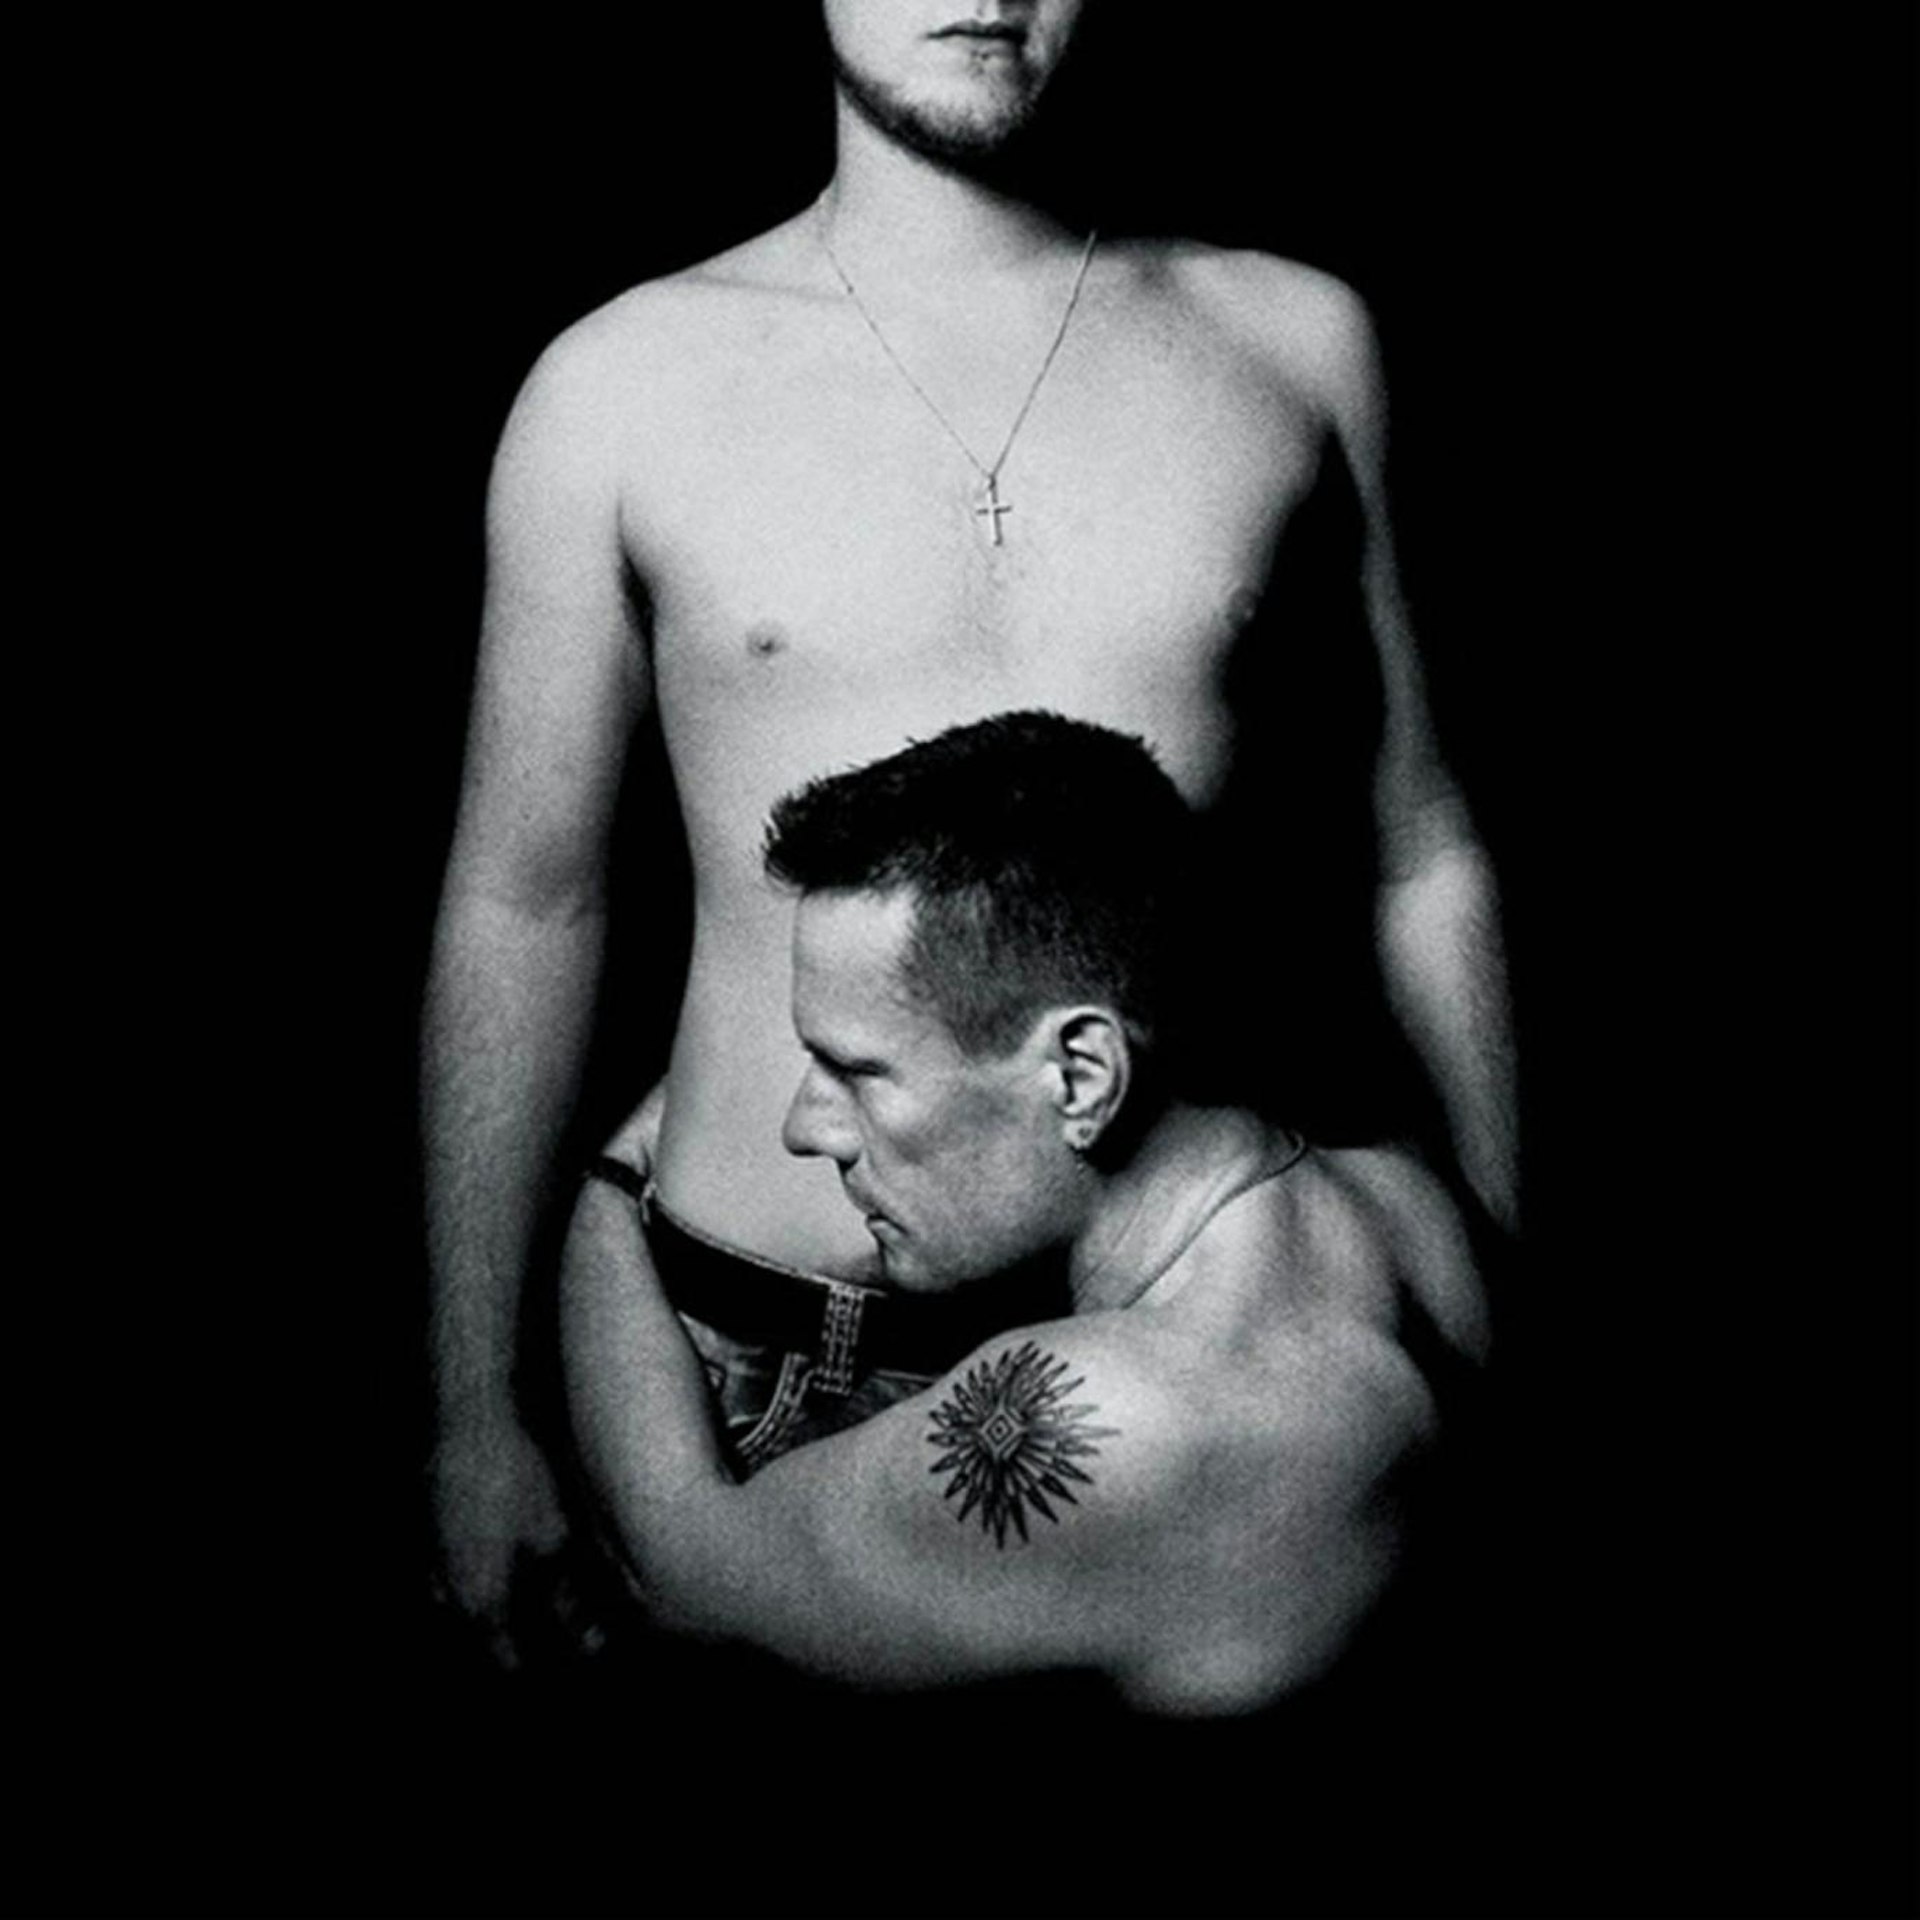 U2's Songs of Innocence album sleeve